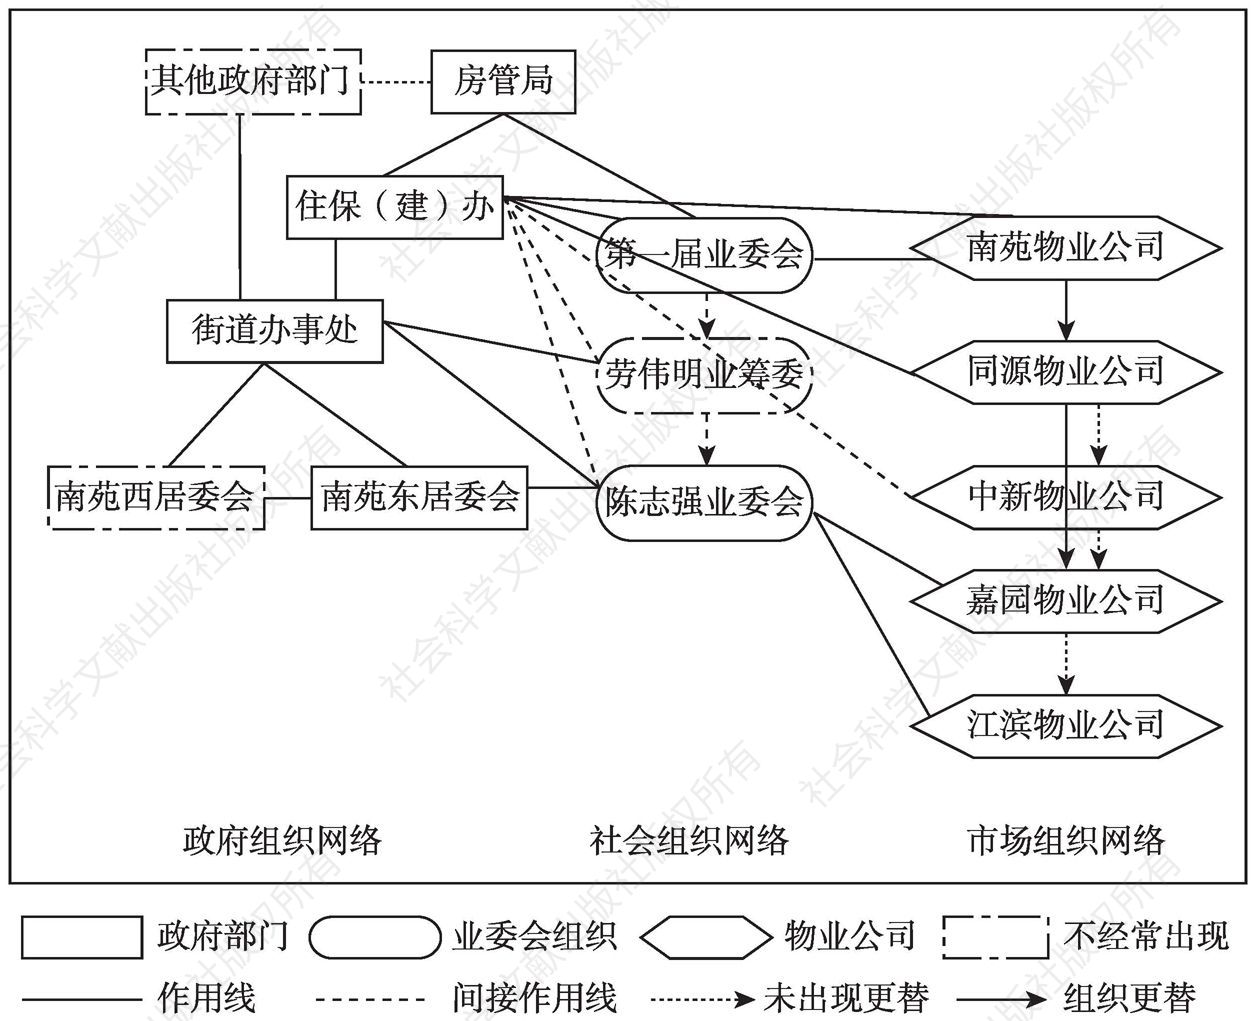 图2-1 南苑社区治理网络结构